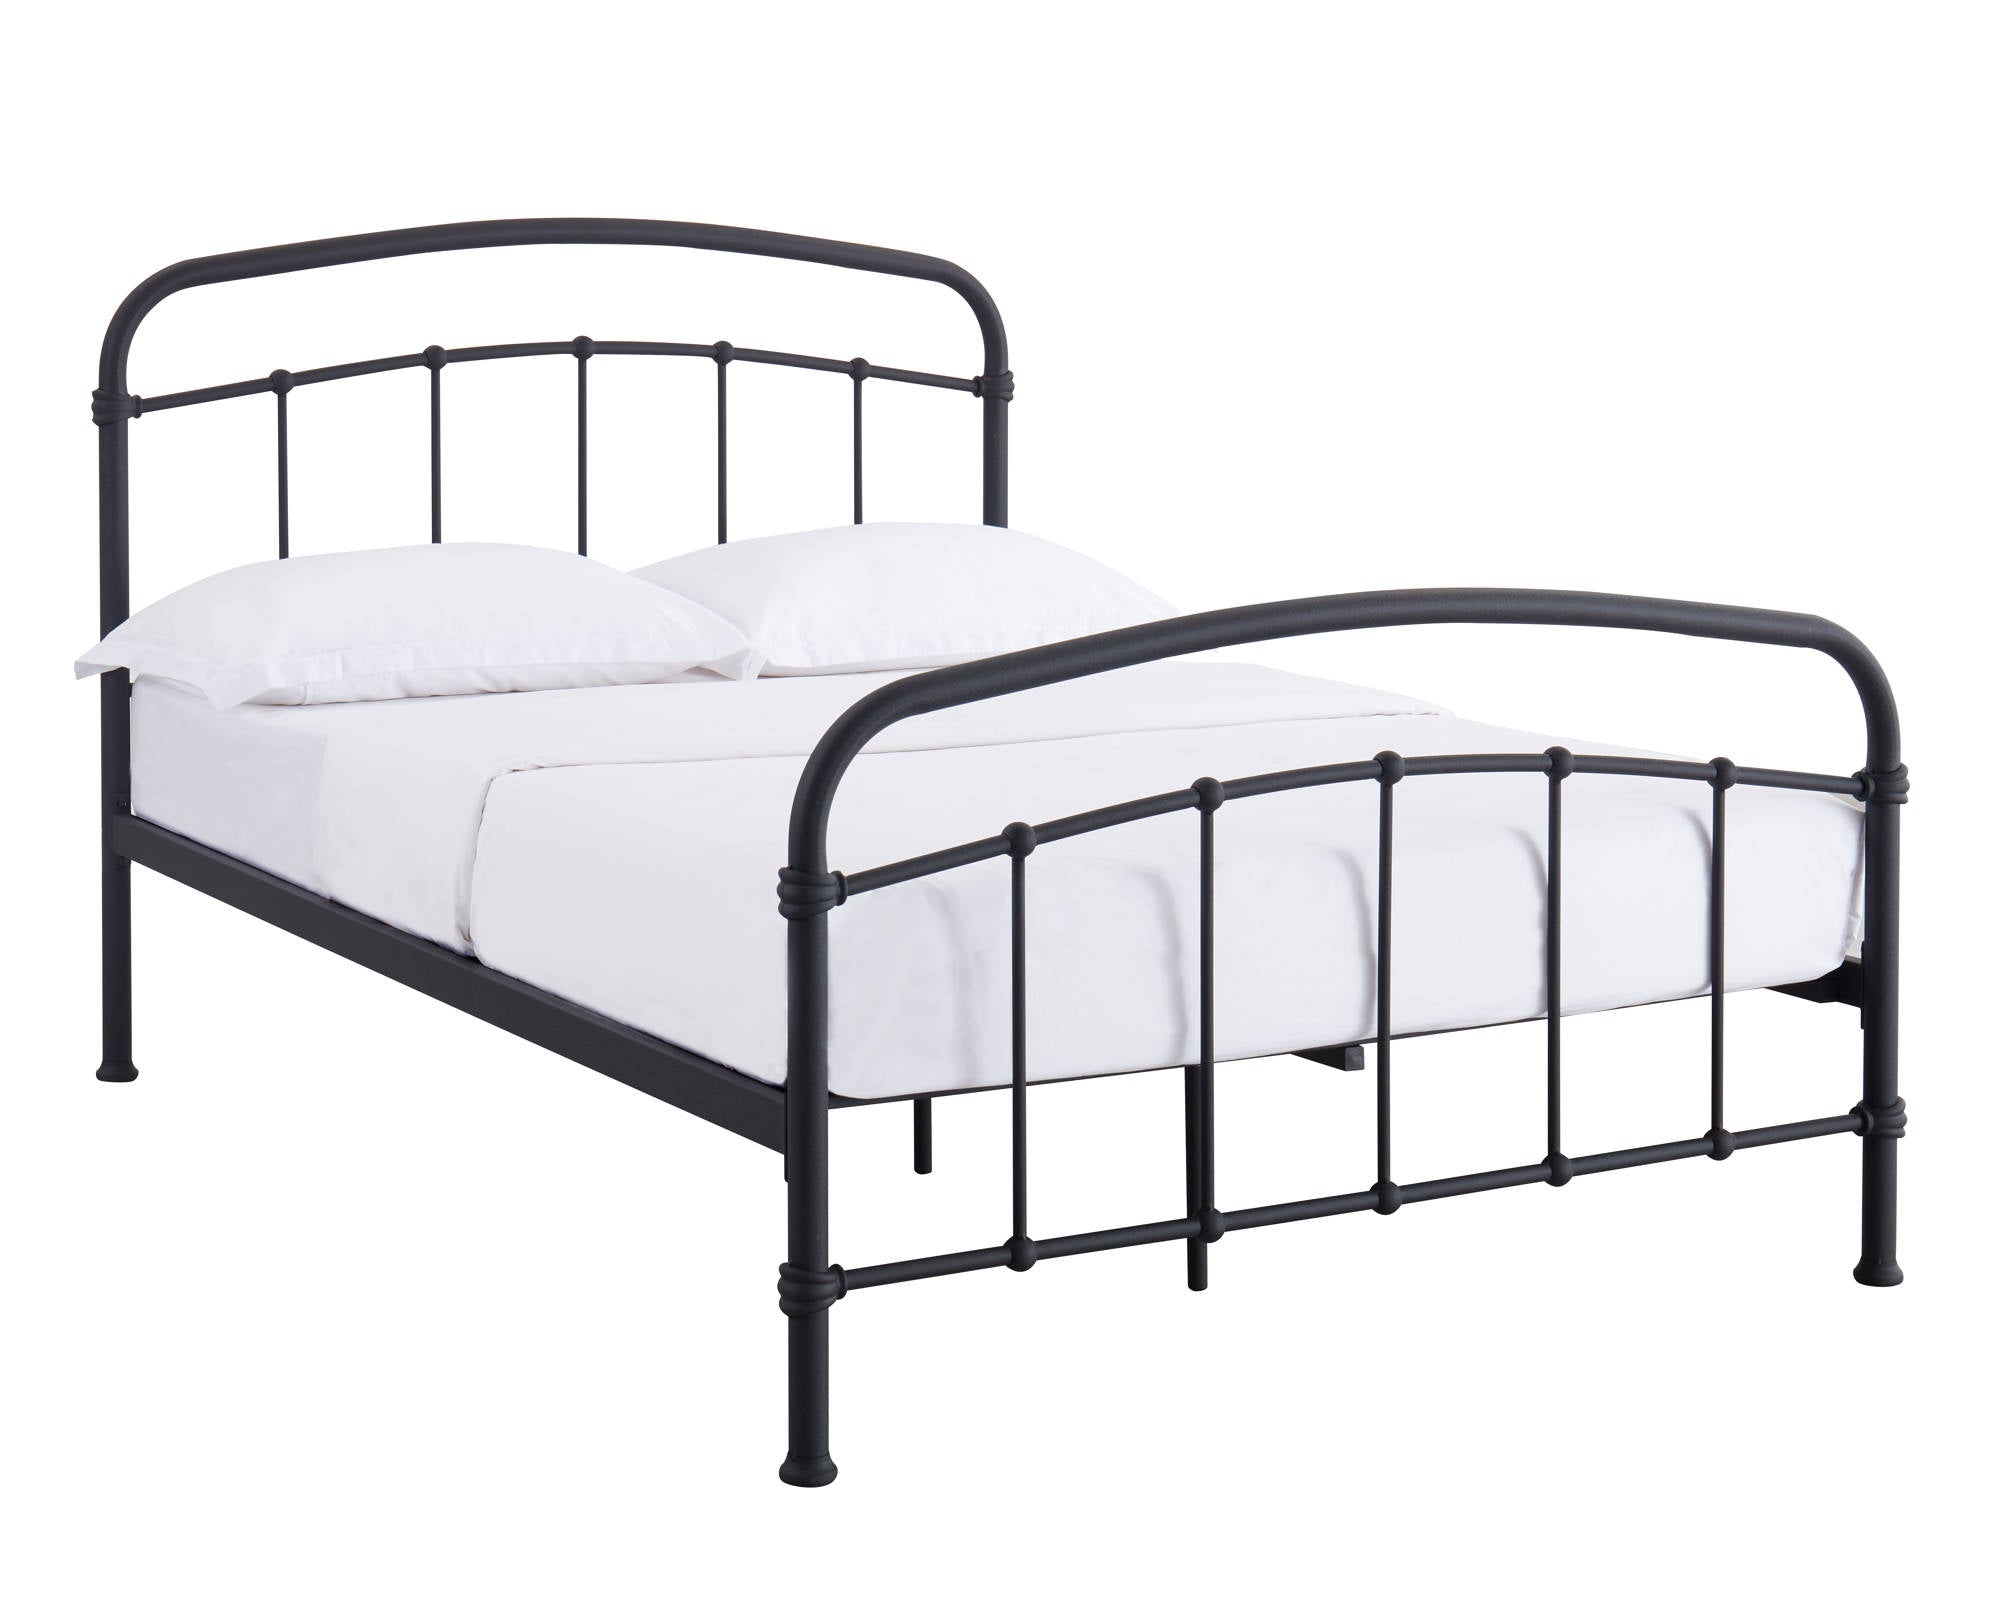 Stretton Double Bed in Black - Ezzo